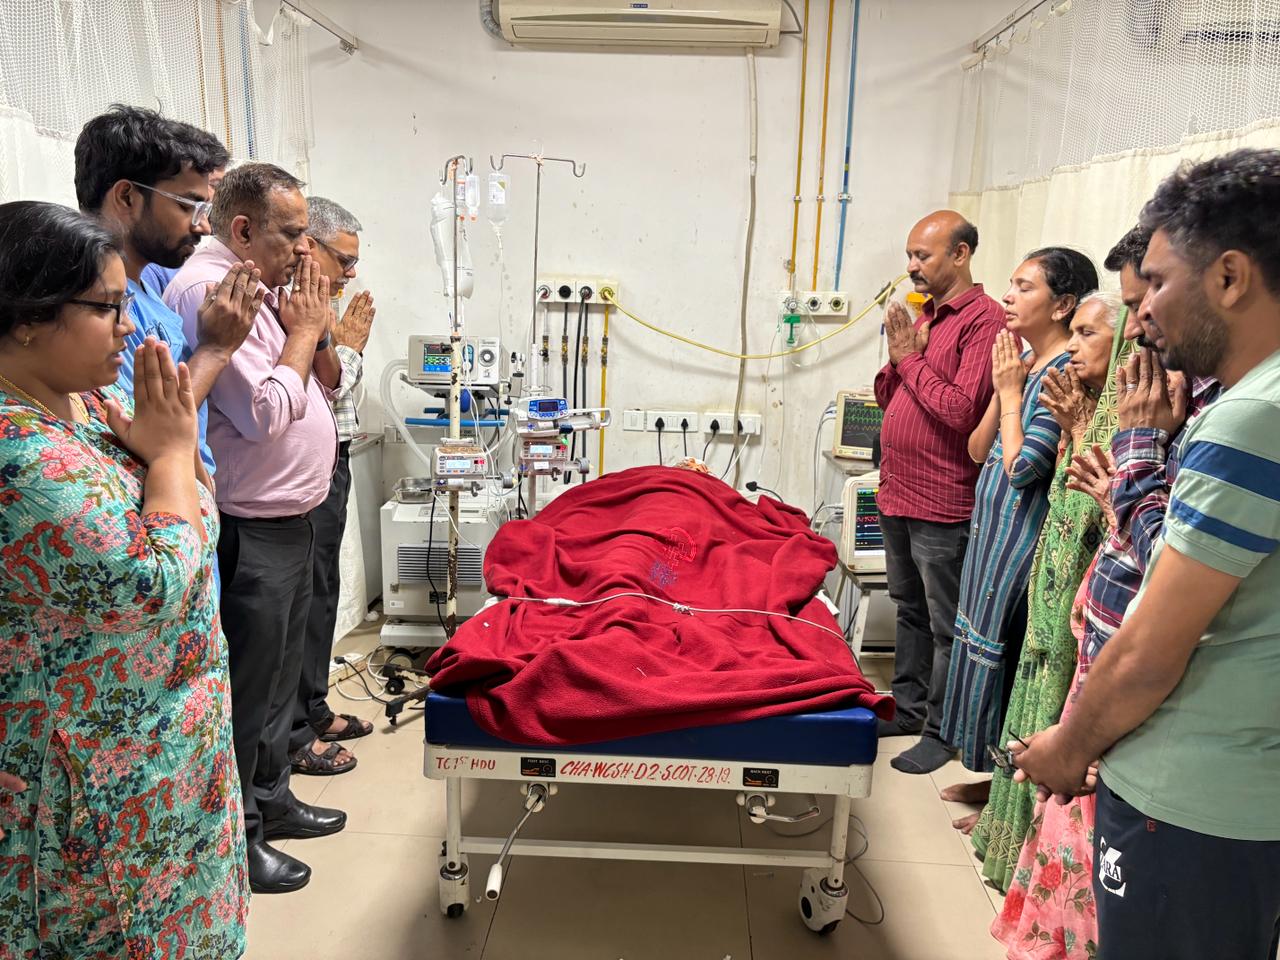 Video news : अहमदाबाद सिविल अस्पताल में ब्रेन डेड मरीज की त्वचा, किडनी, लिवर व
आंखों का दान